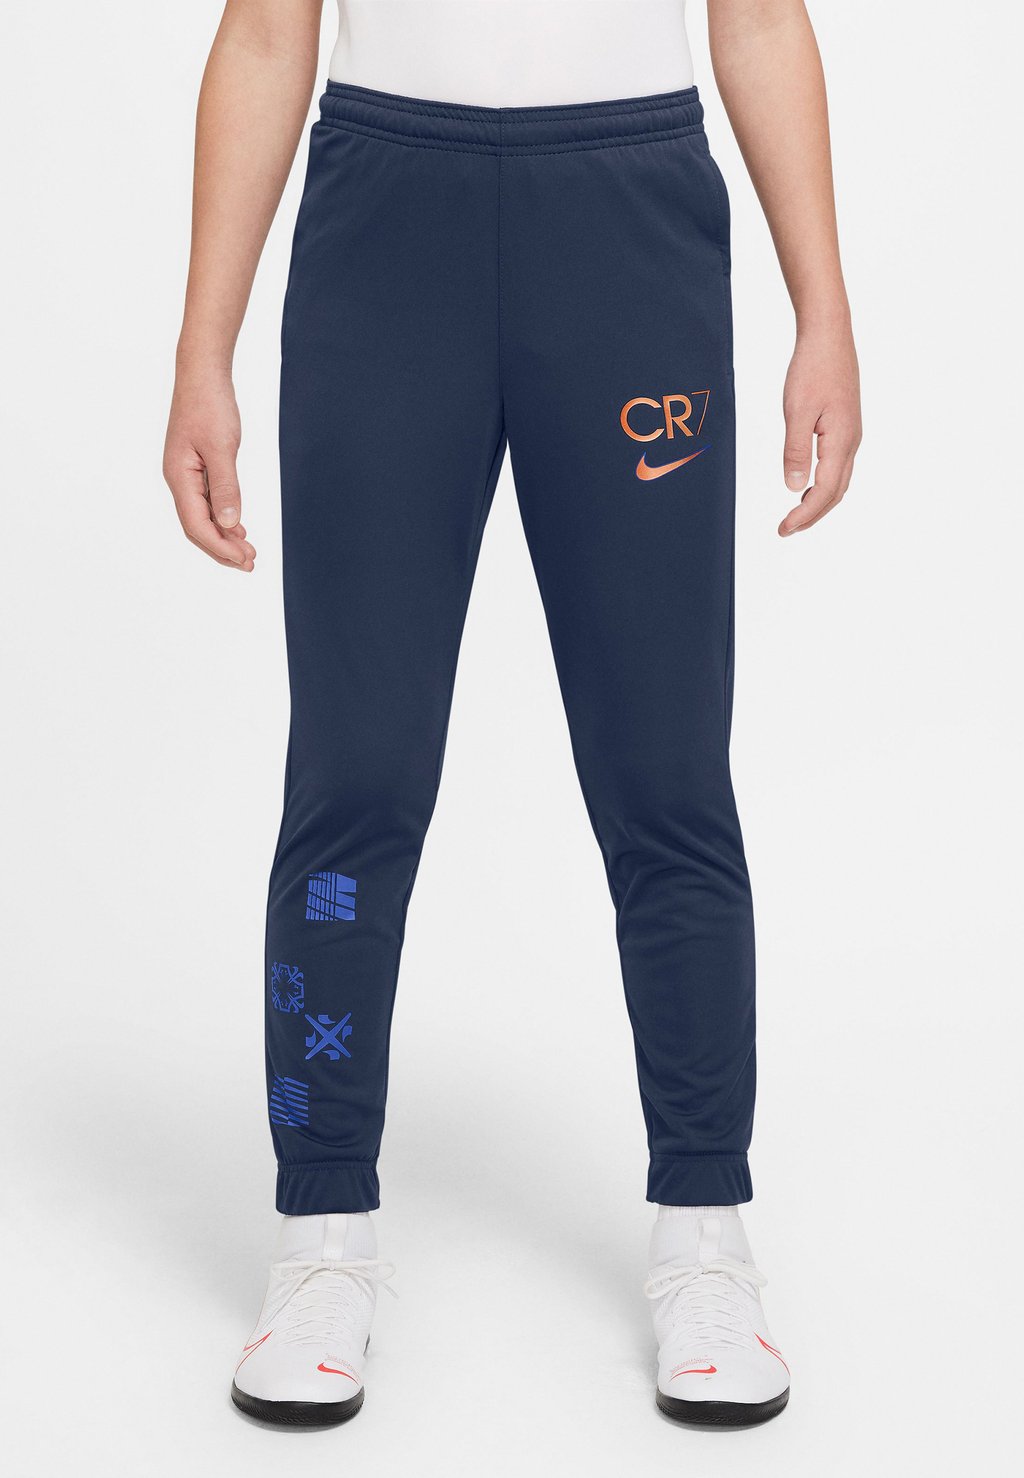 Спортивные брюки CR7 DRY PANT Nike Performance, темно-синий